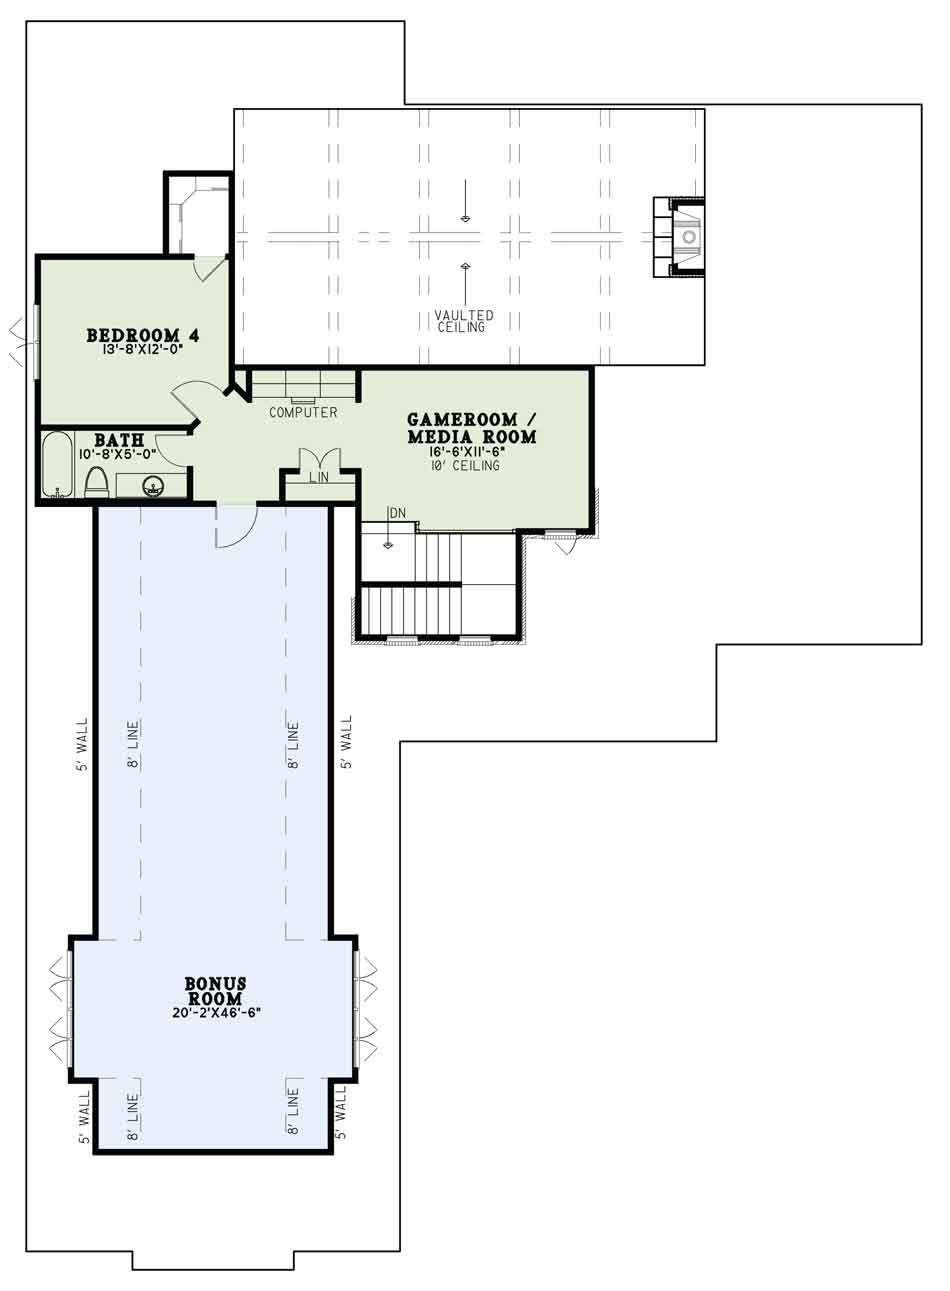 House Plan NDG 1616 Upper Floor